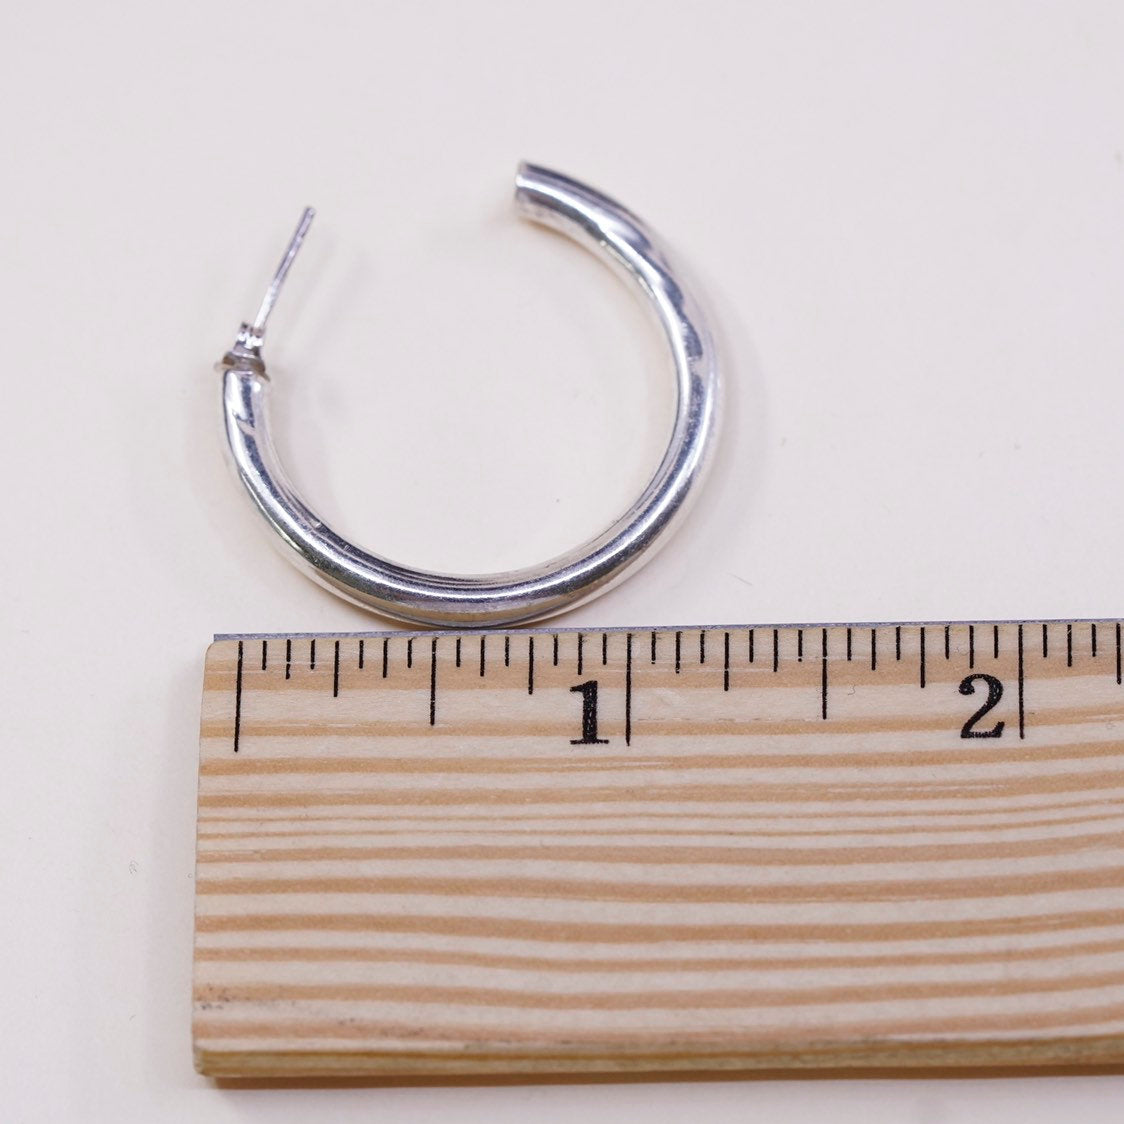 1.25", VTG sterling 925 silver loop earrings, primitive hoops